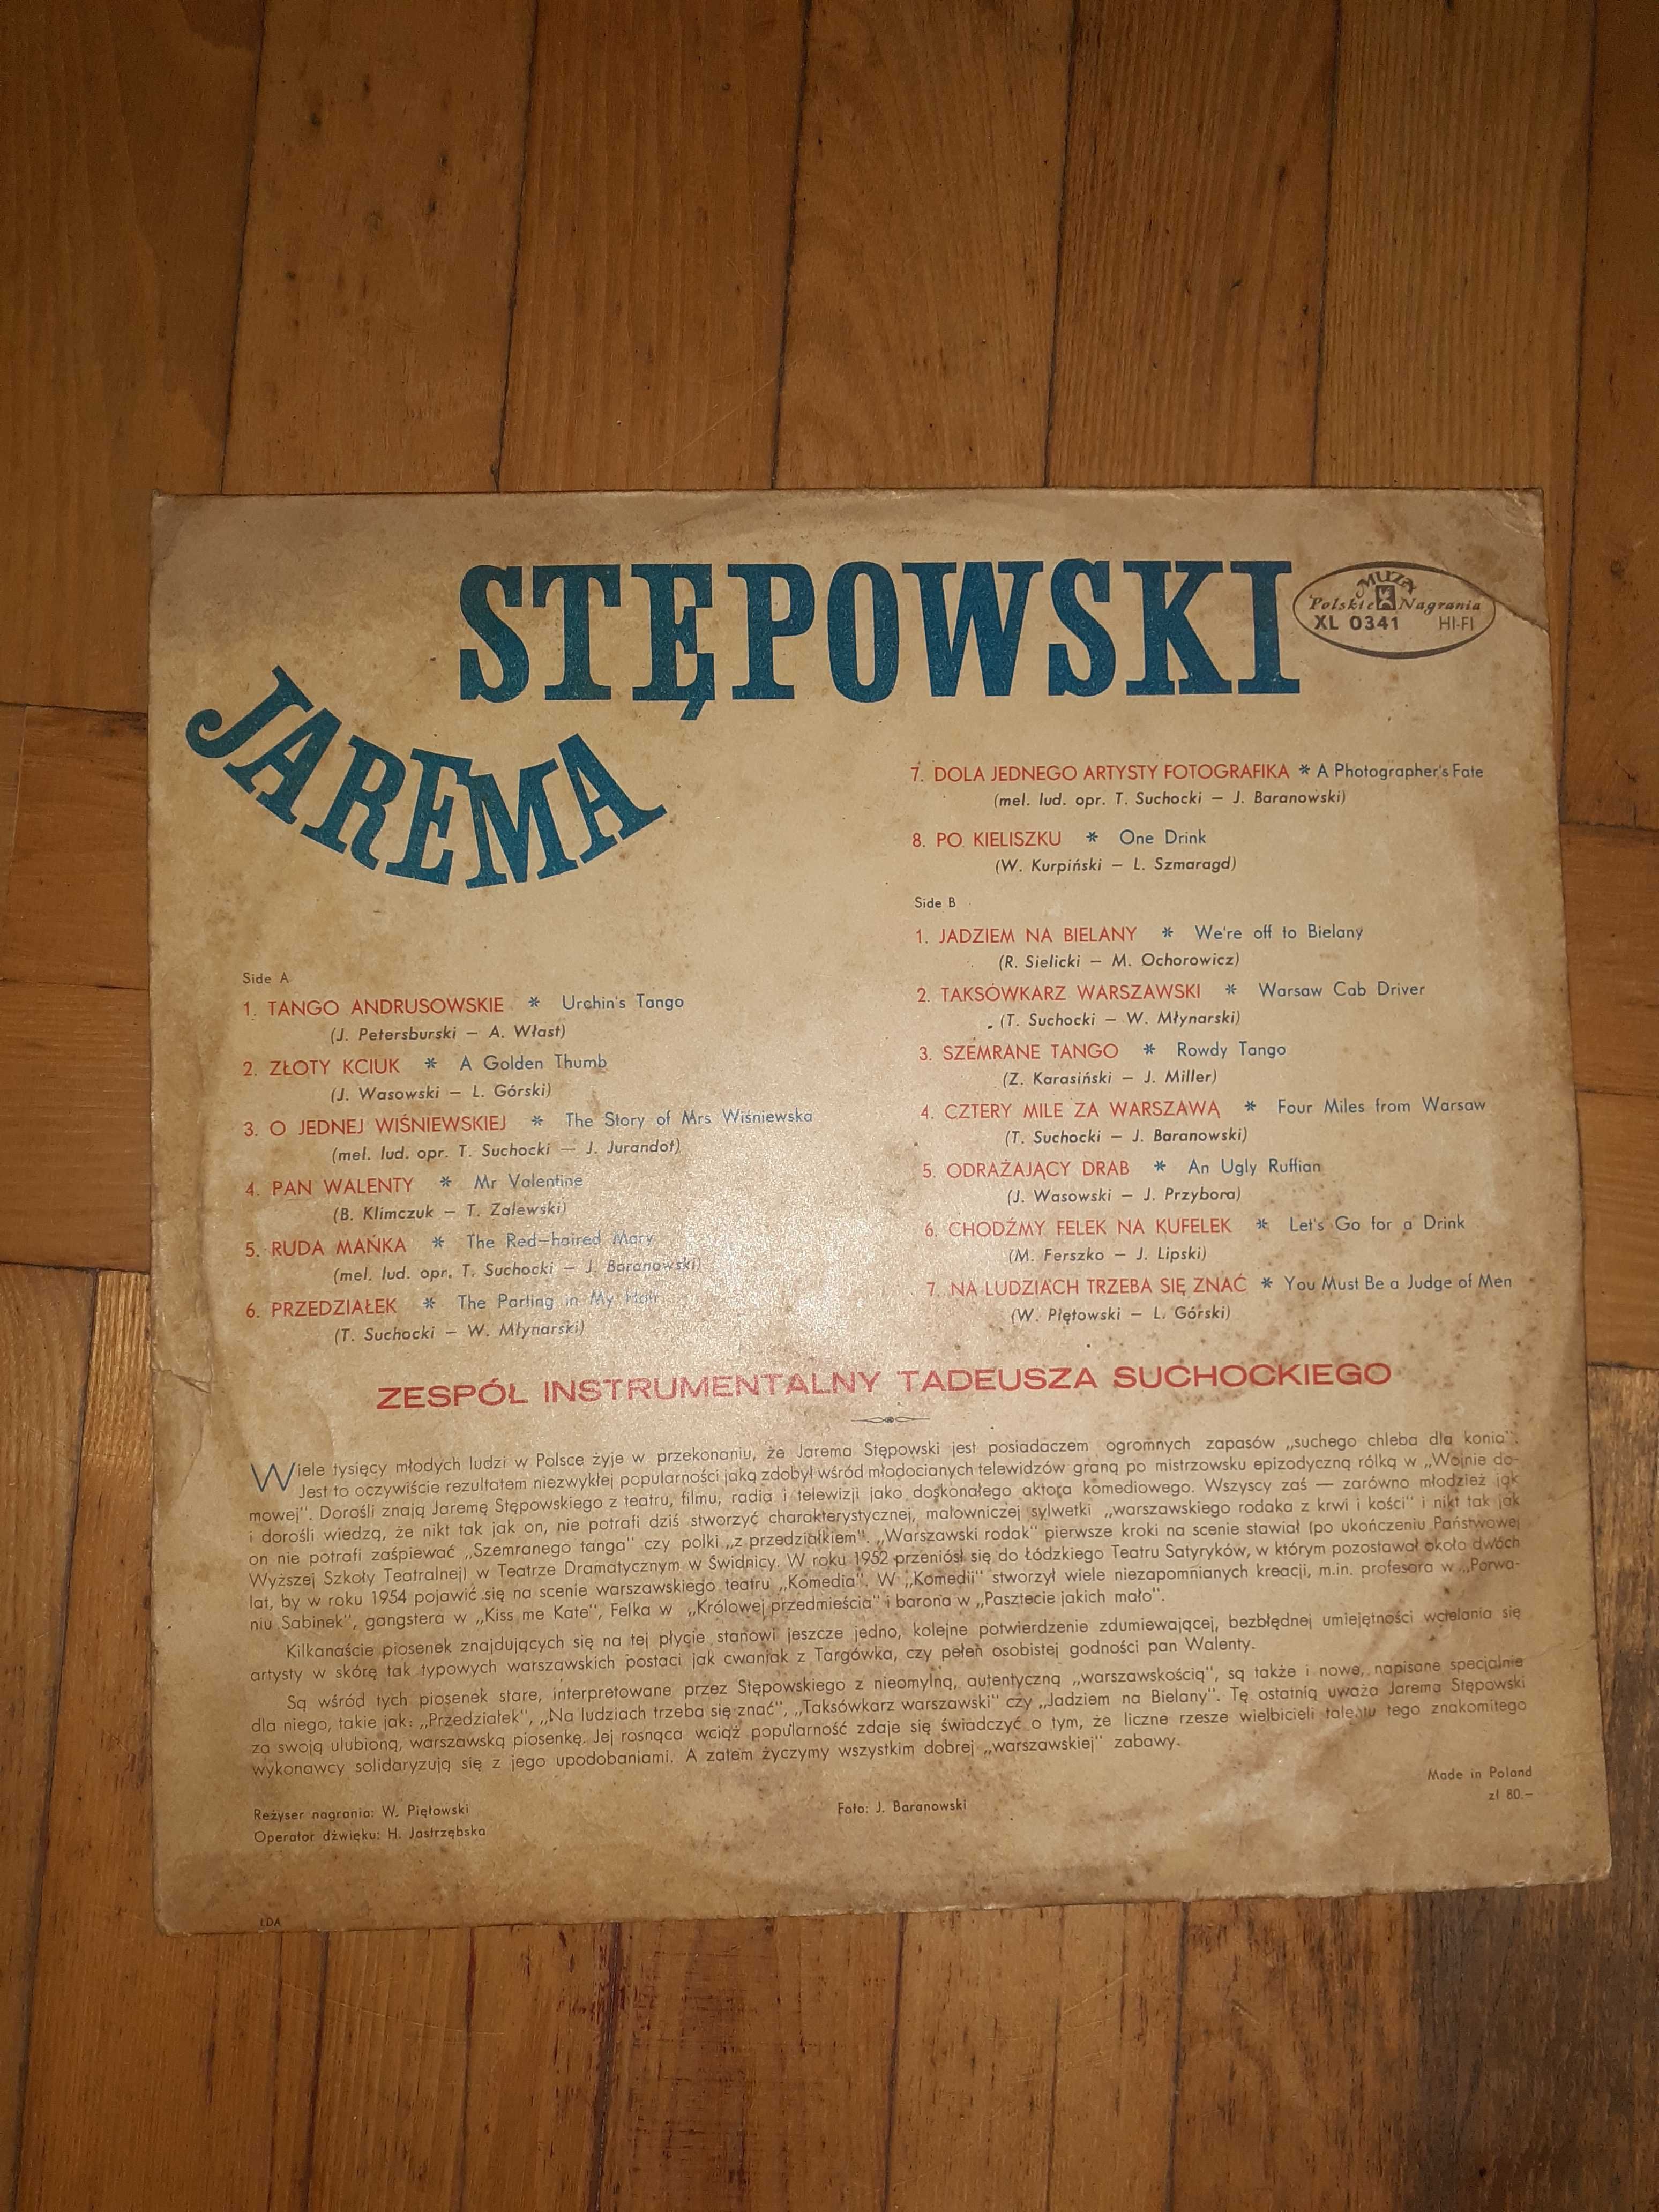 Płyta winylowa stępowski jerema szemrane tango